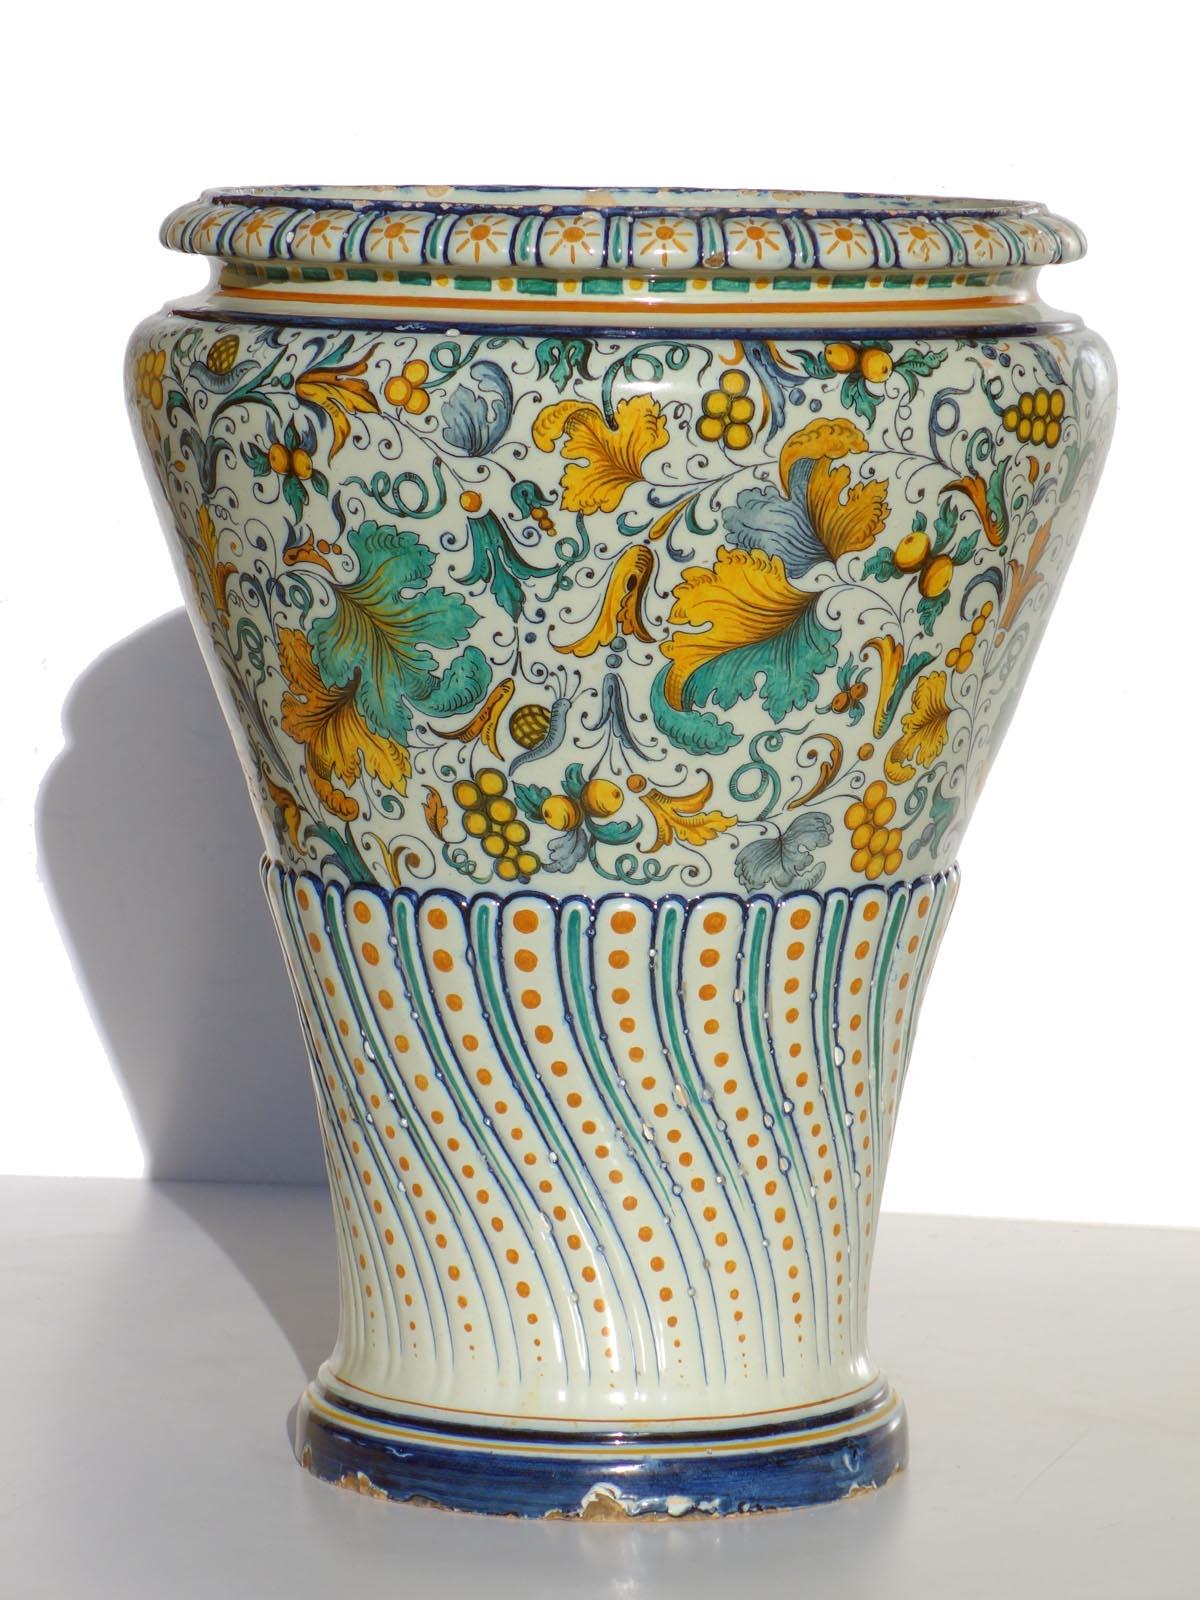 Vase en majolique Bigli
Ginori
Italie, 1850-1890

Très bonne codification
Difetto di cottura sotto la base (vedere fotografia)